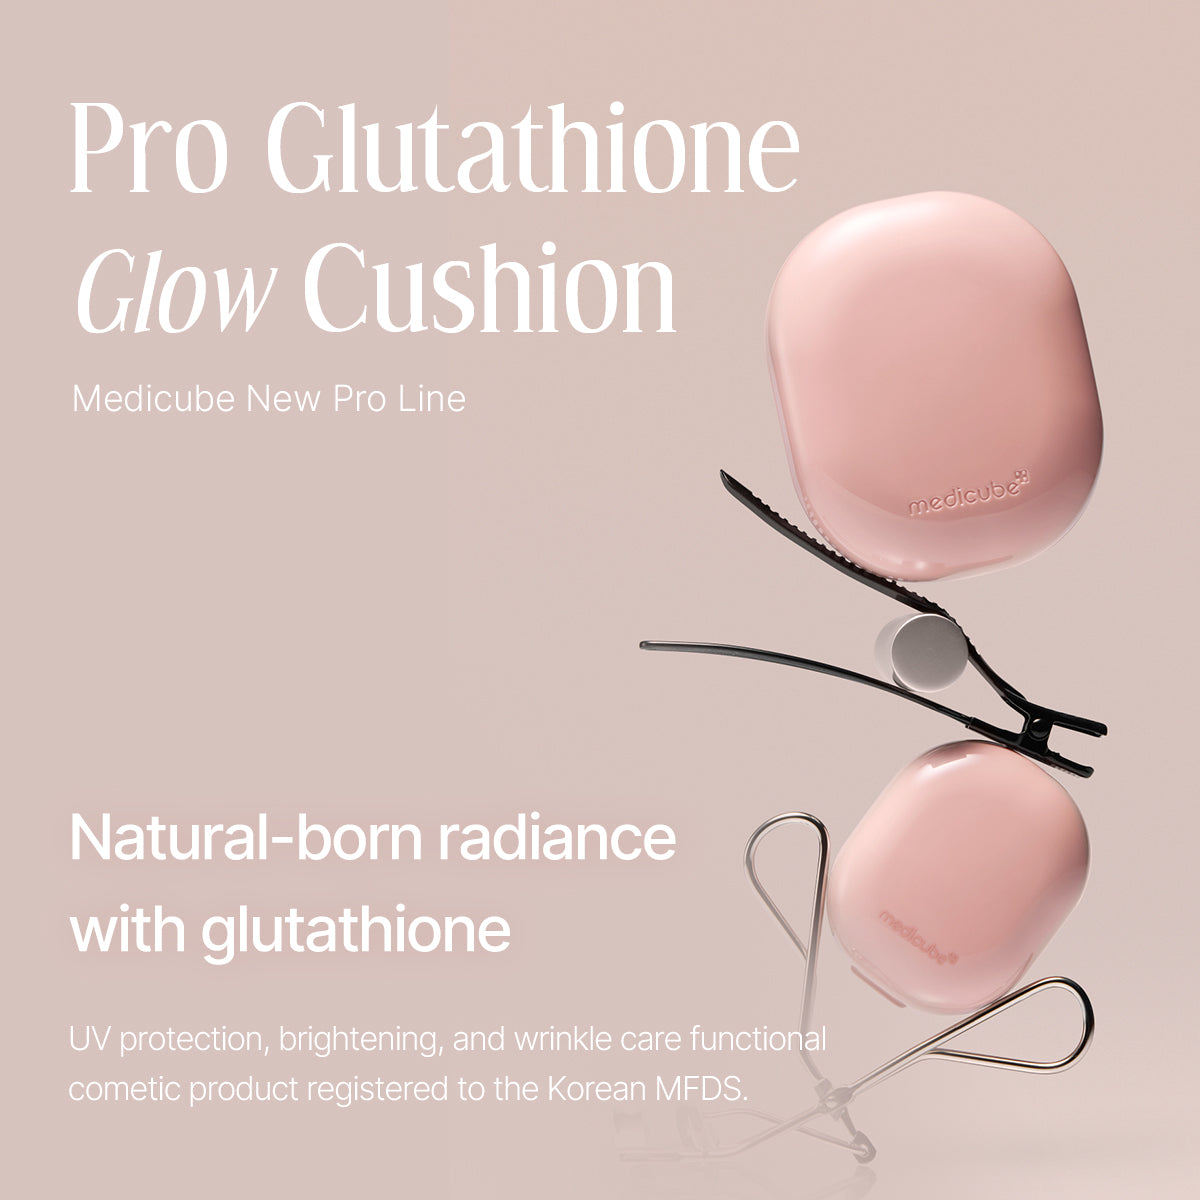 Glutathione Glow Cushion